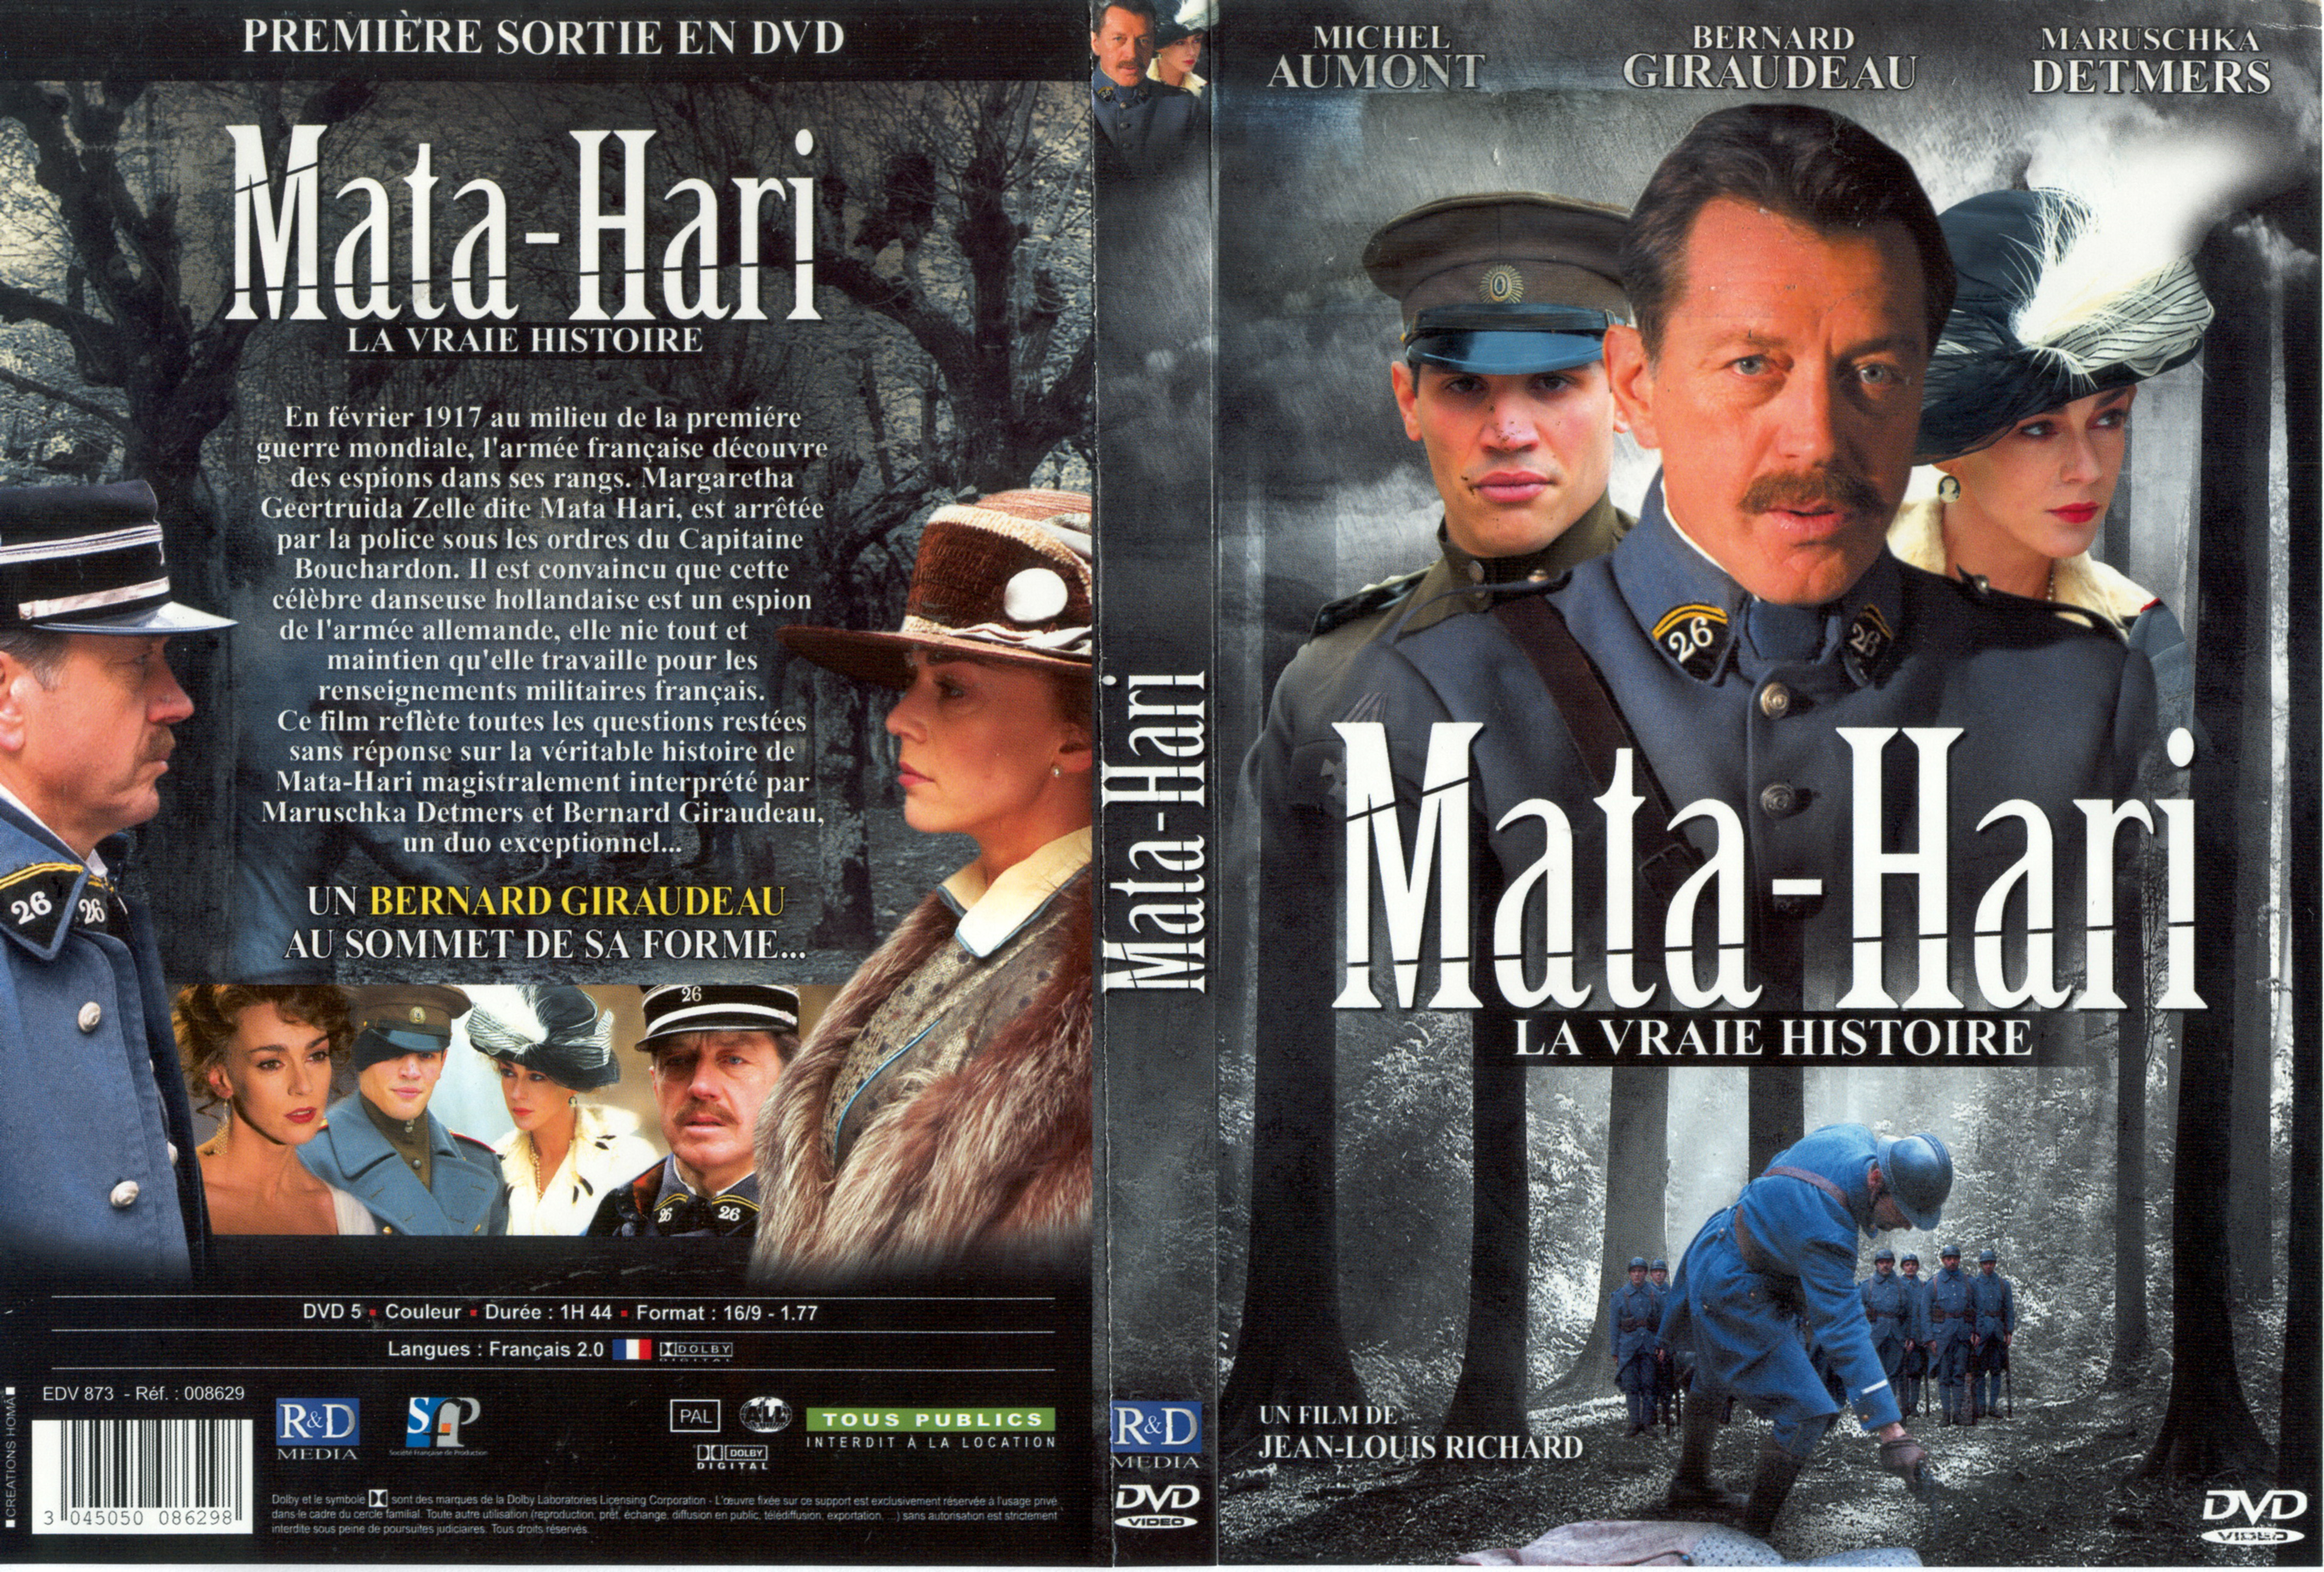 Jaquette DVD Mata-Hari la vraie histoire